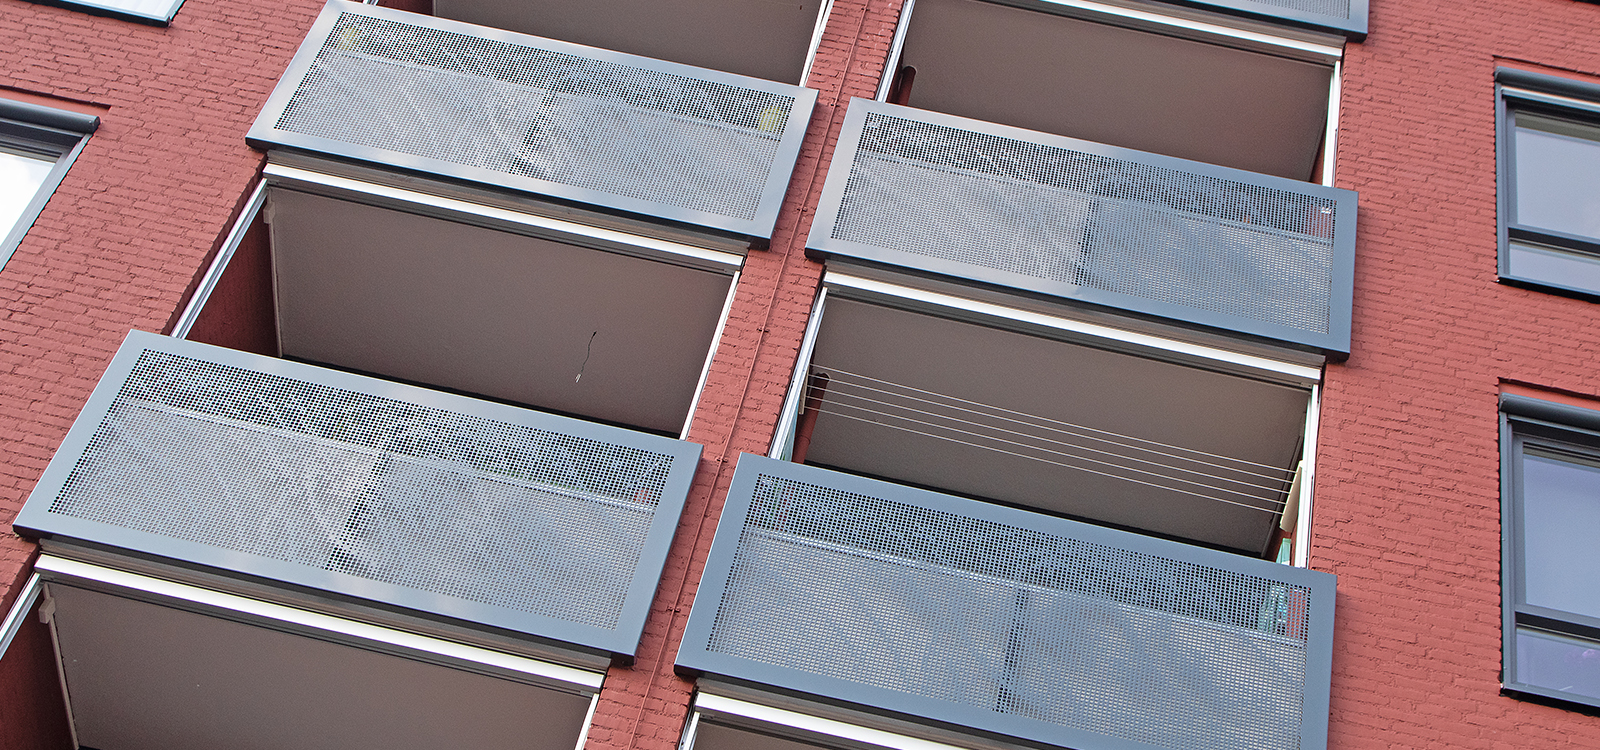 Balkonhekken aluminium